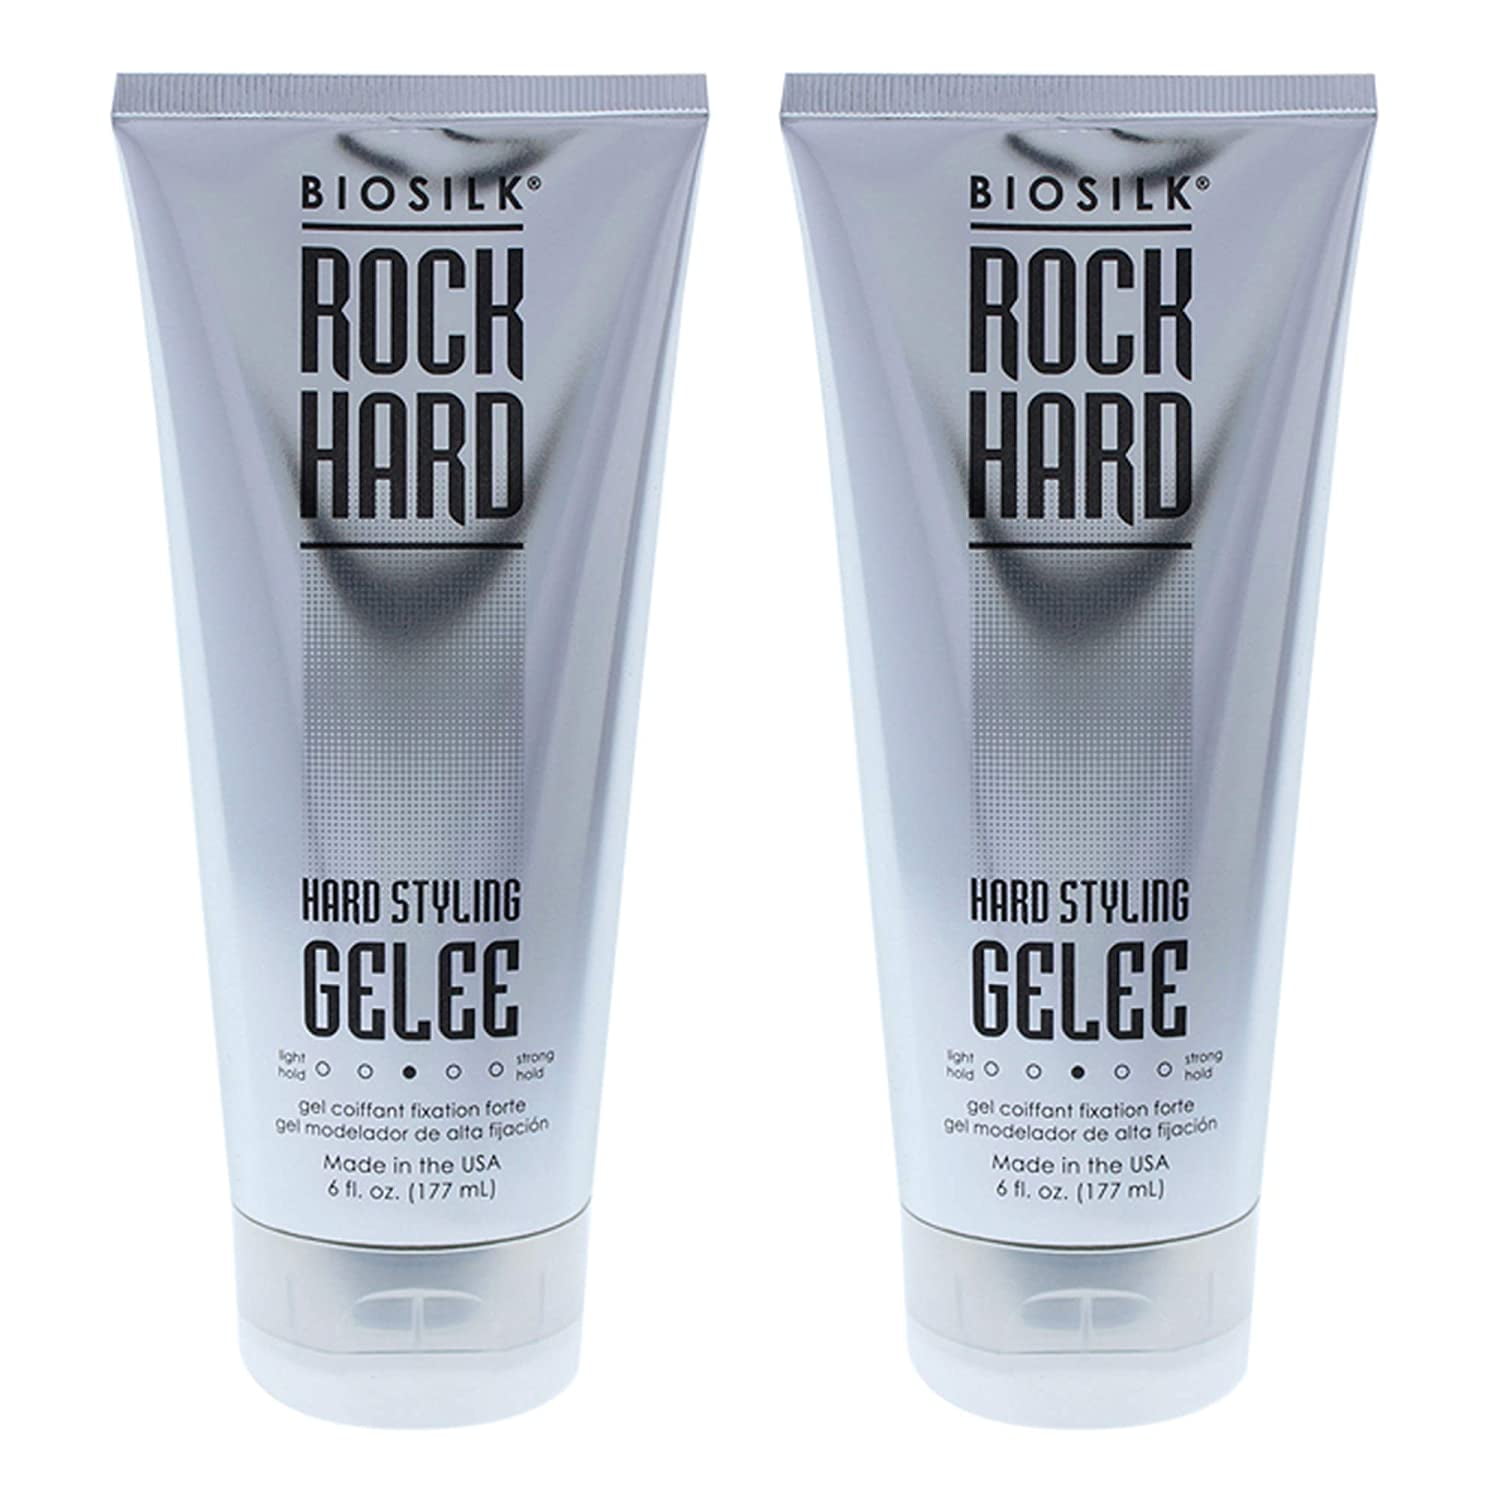 Biosilk Rock Hard Hair Styling Hair Gelee, 6 Oz (Pack of 2) 